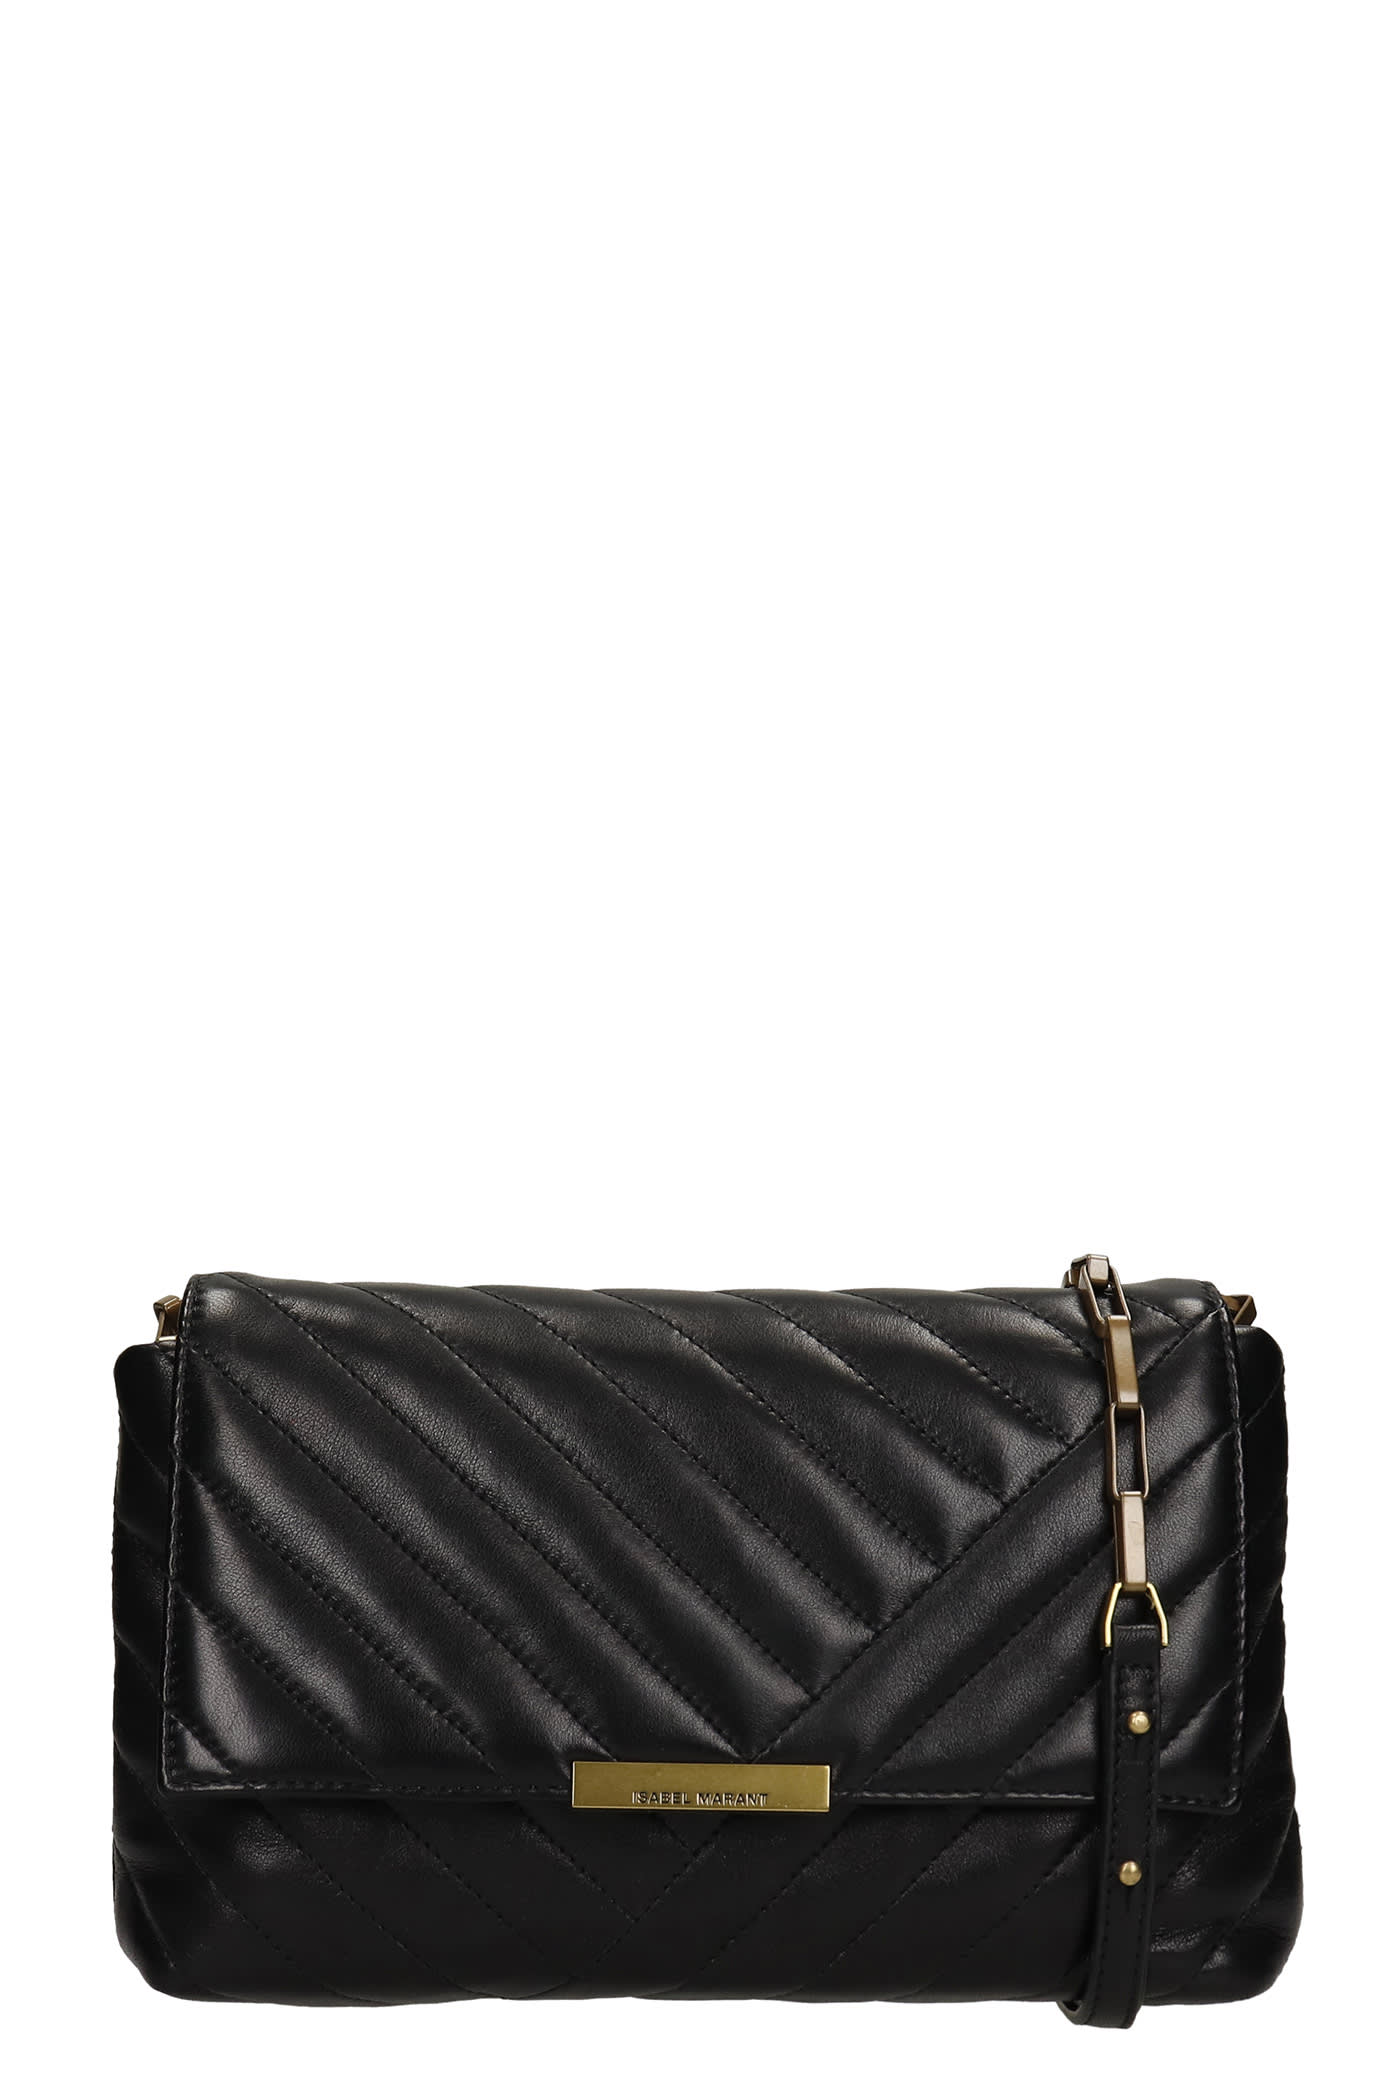 Isabel Marant Merine Shoulder Bag In Black Leather